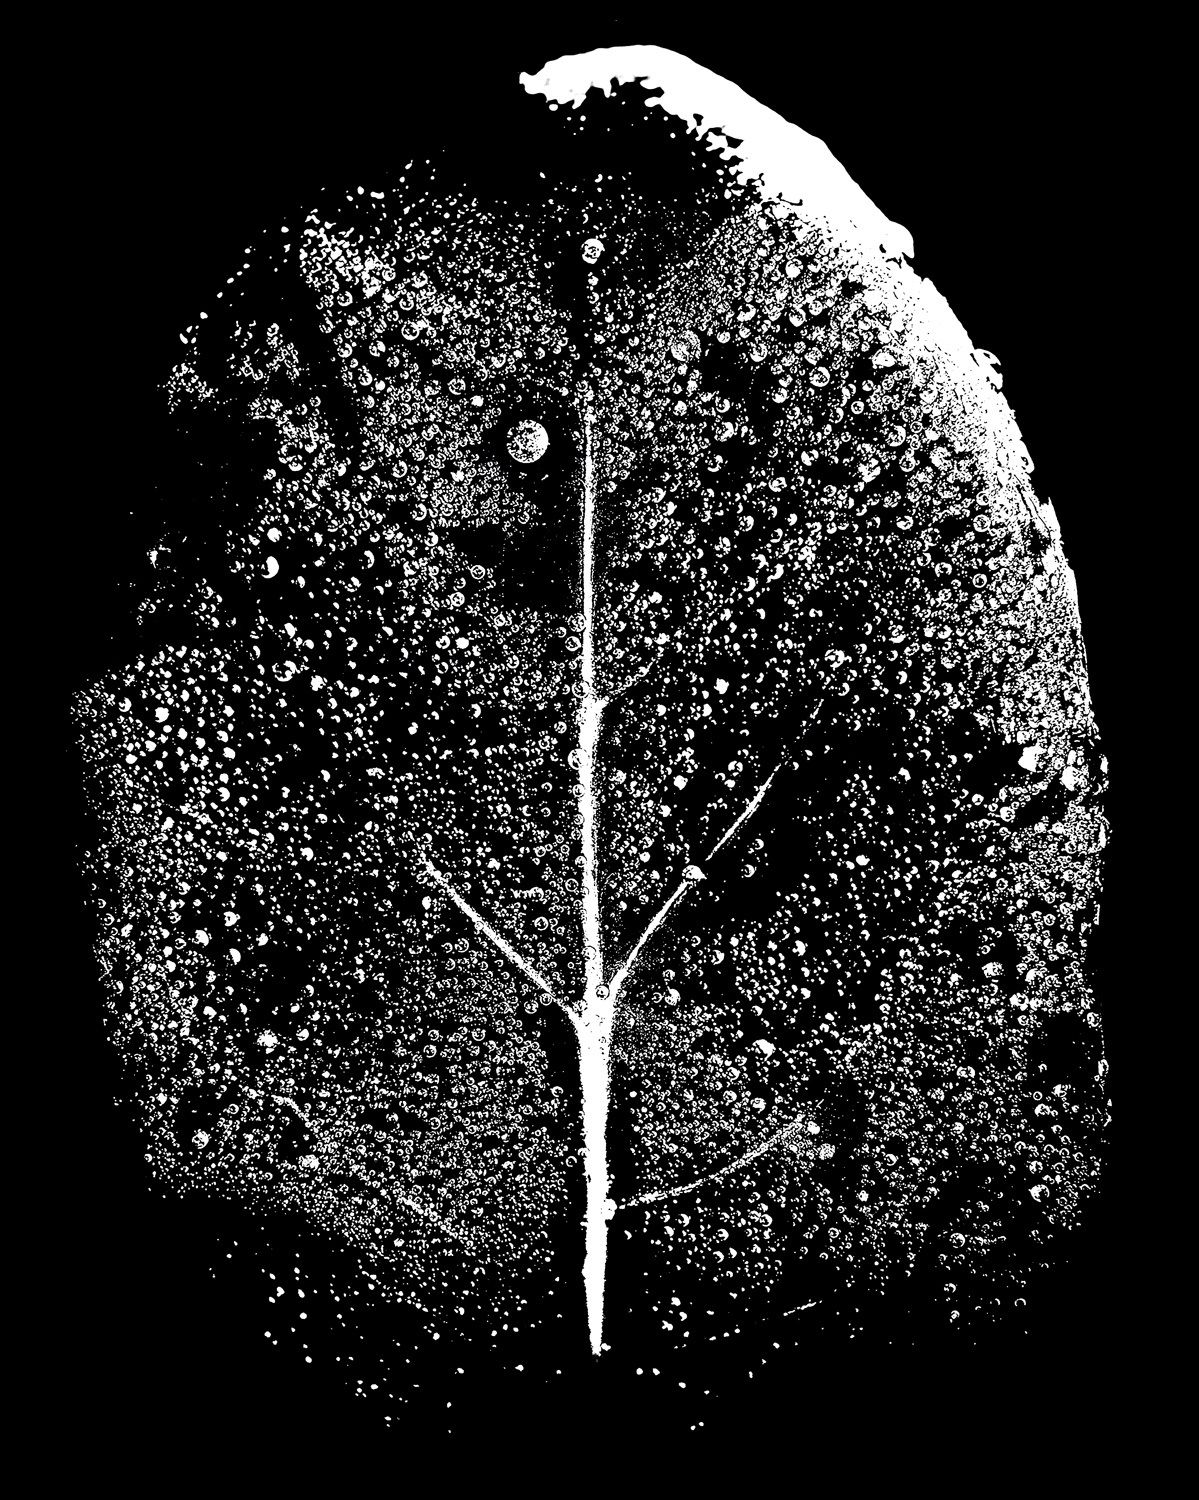 Tiny Immensity #3 - Night Tree/Wet Leaf ©2014 L. Aviva Diamond